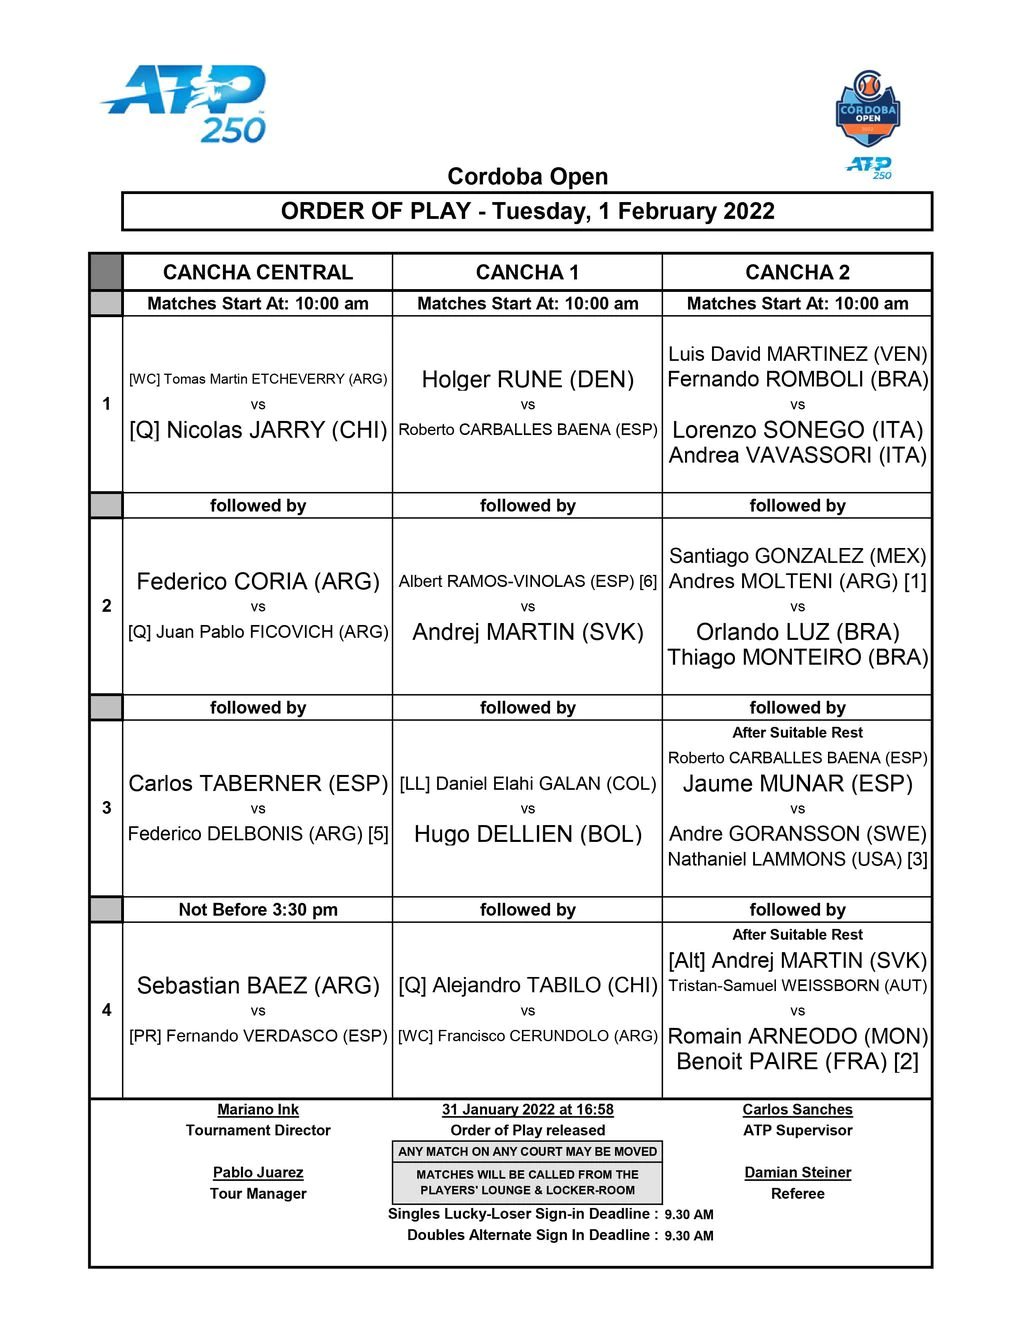 Coria y Delbonis fueron eliminados del ATP de Córdoba